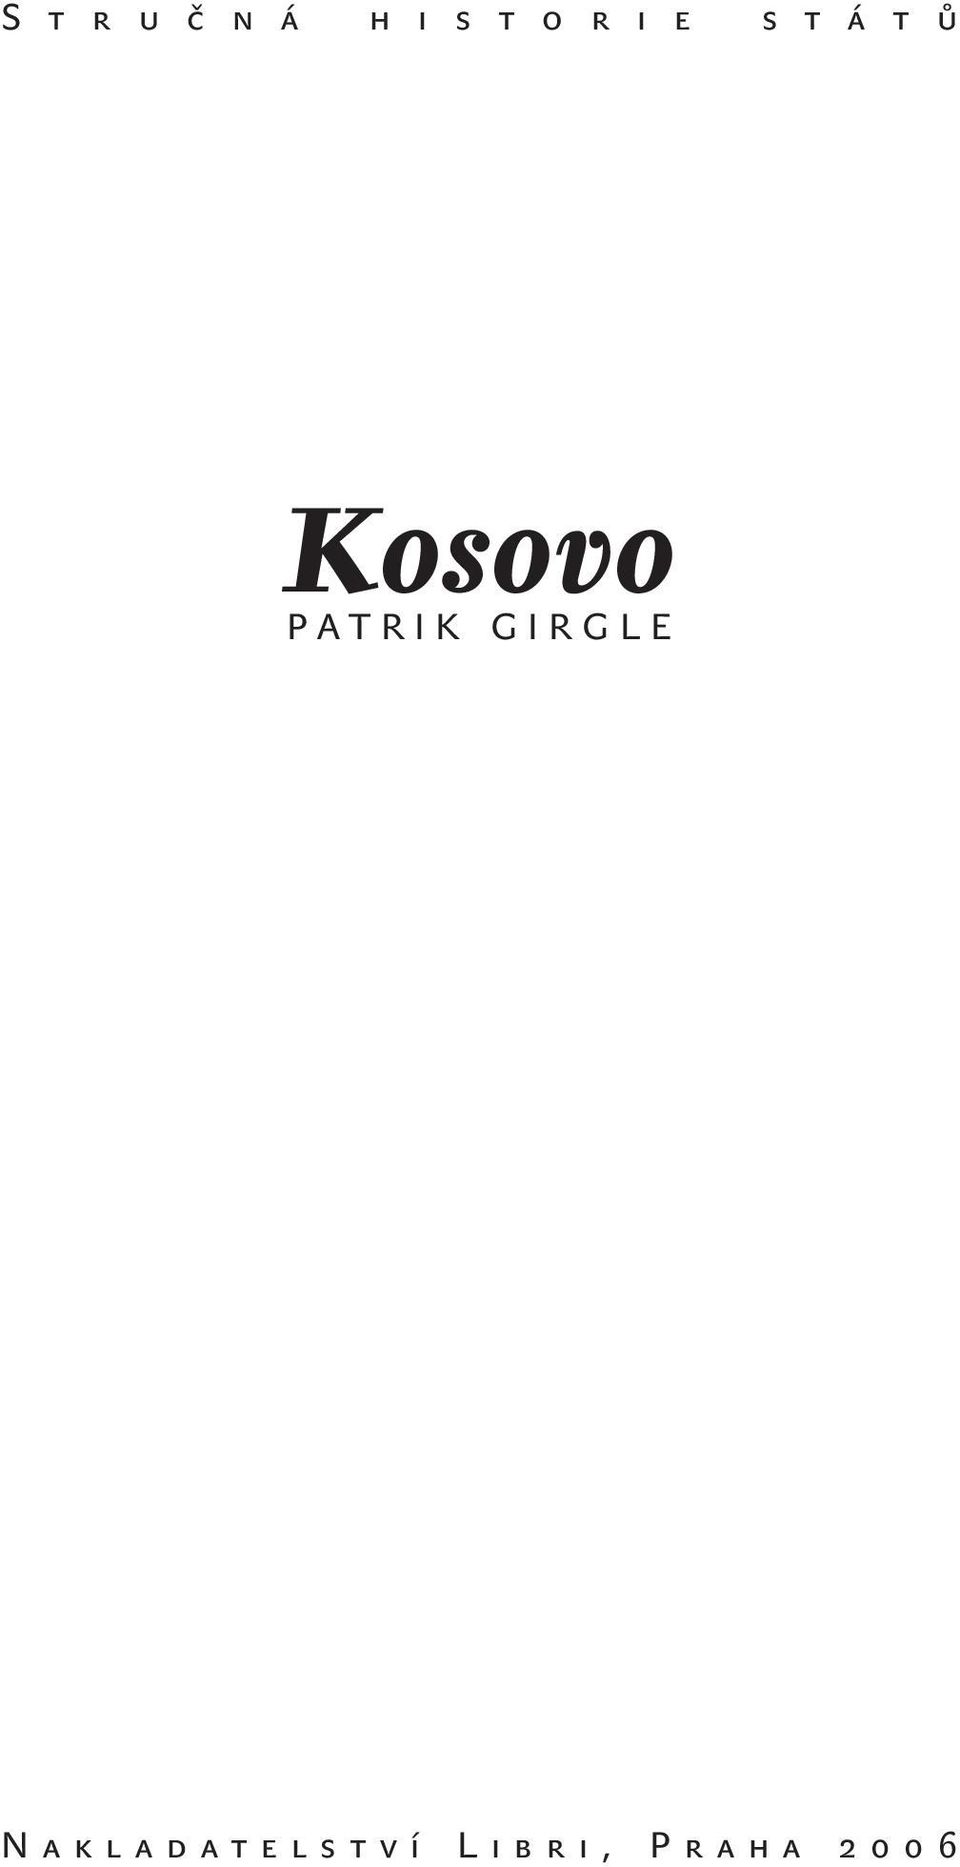 Kosovo PATRIK GIRGLE